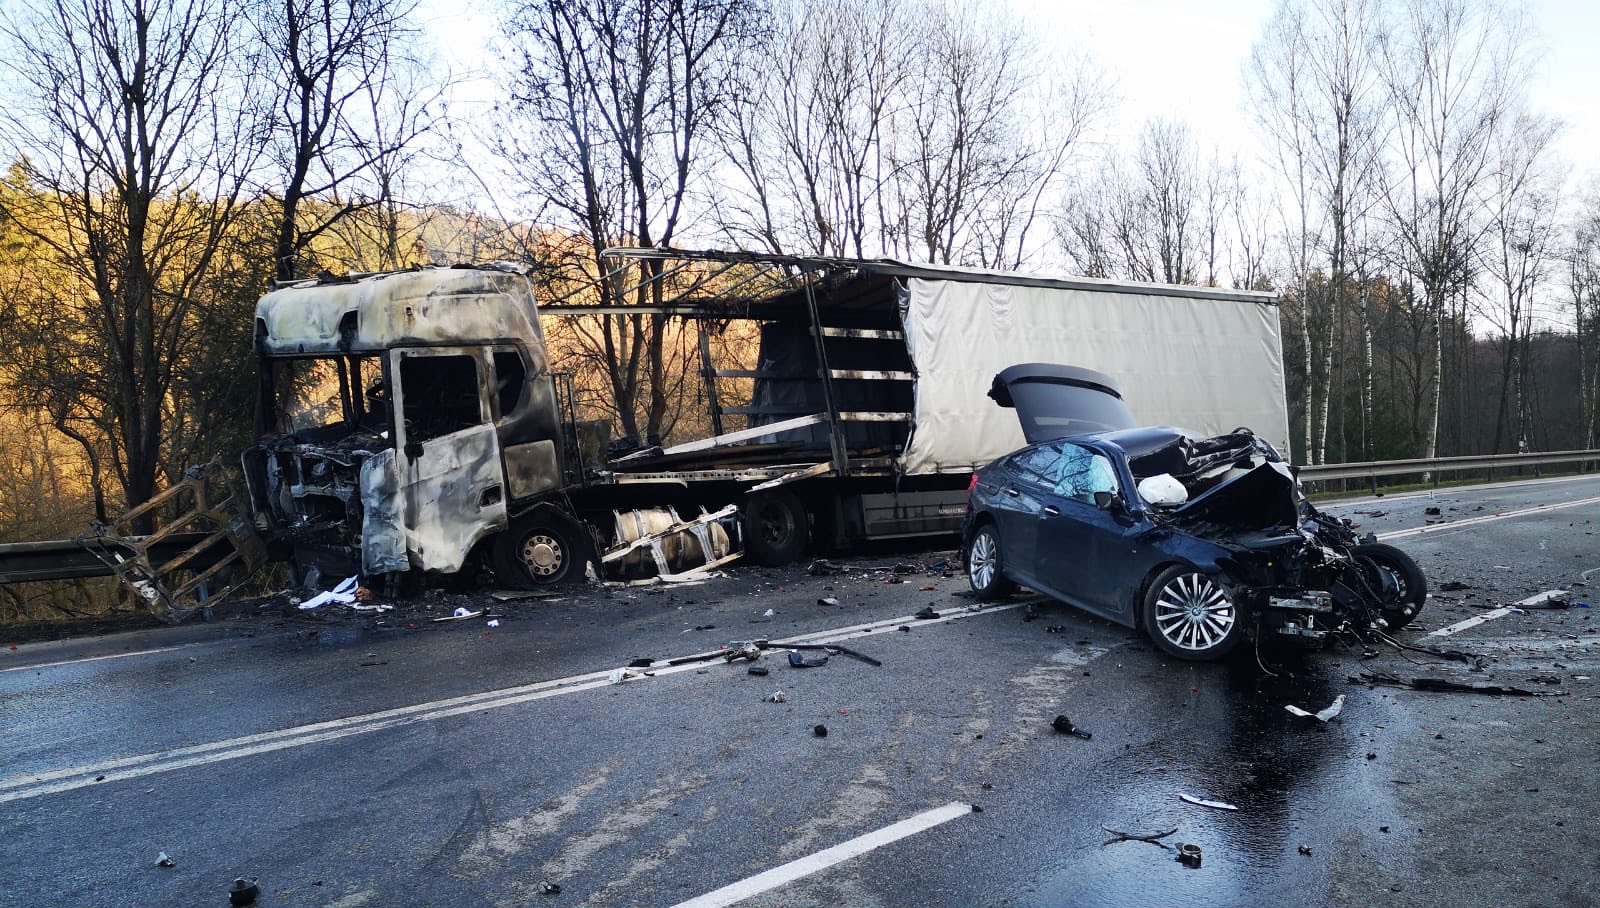 Kamion vzplál po střetu s autem u Votic. Silnice byla zavřená, řidič zemřel  - iDNES.cz